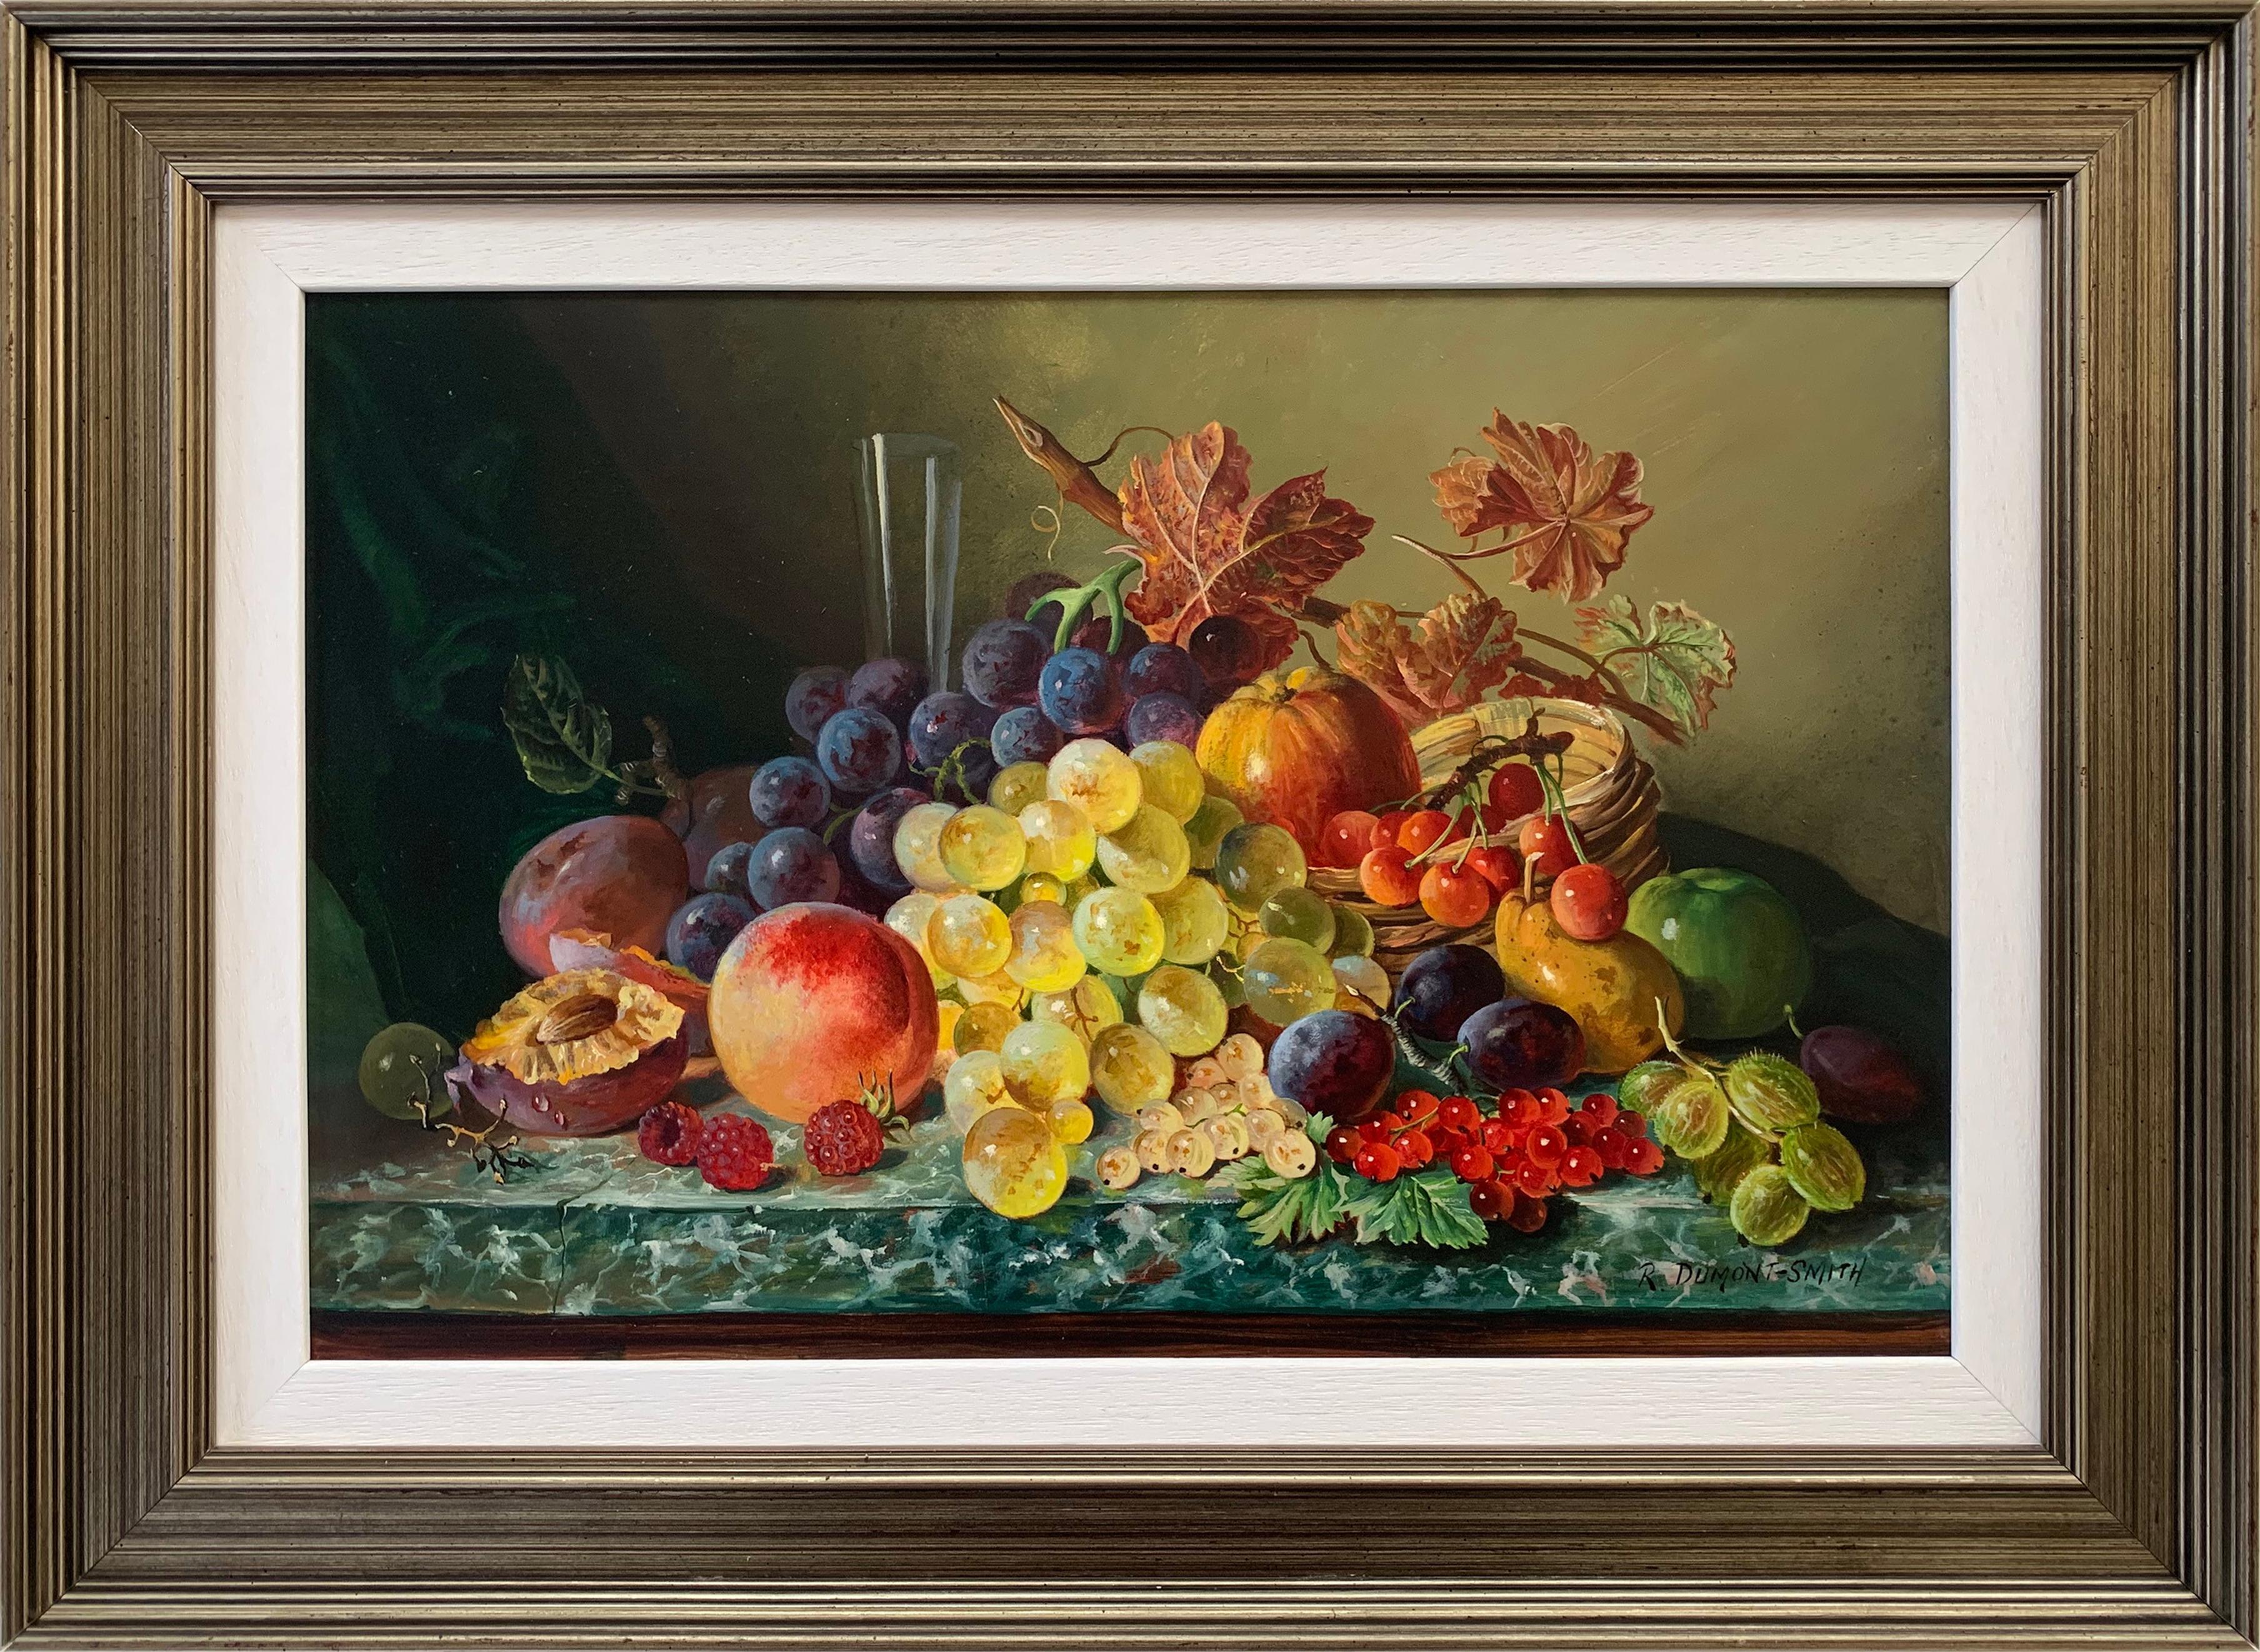 Robert Dumont-Smith Interior Painting – Schönes:: farbenfrohes Ölgemälde eines berühmten britischen Malers von Obst